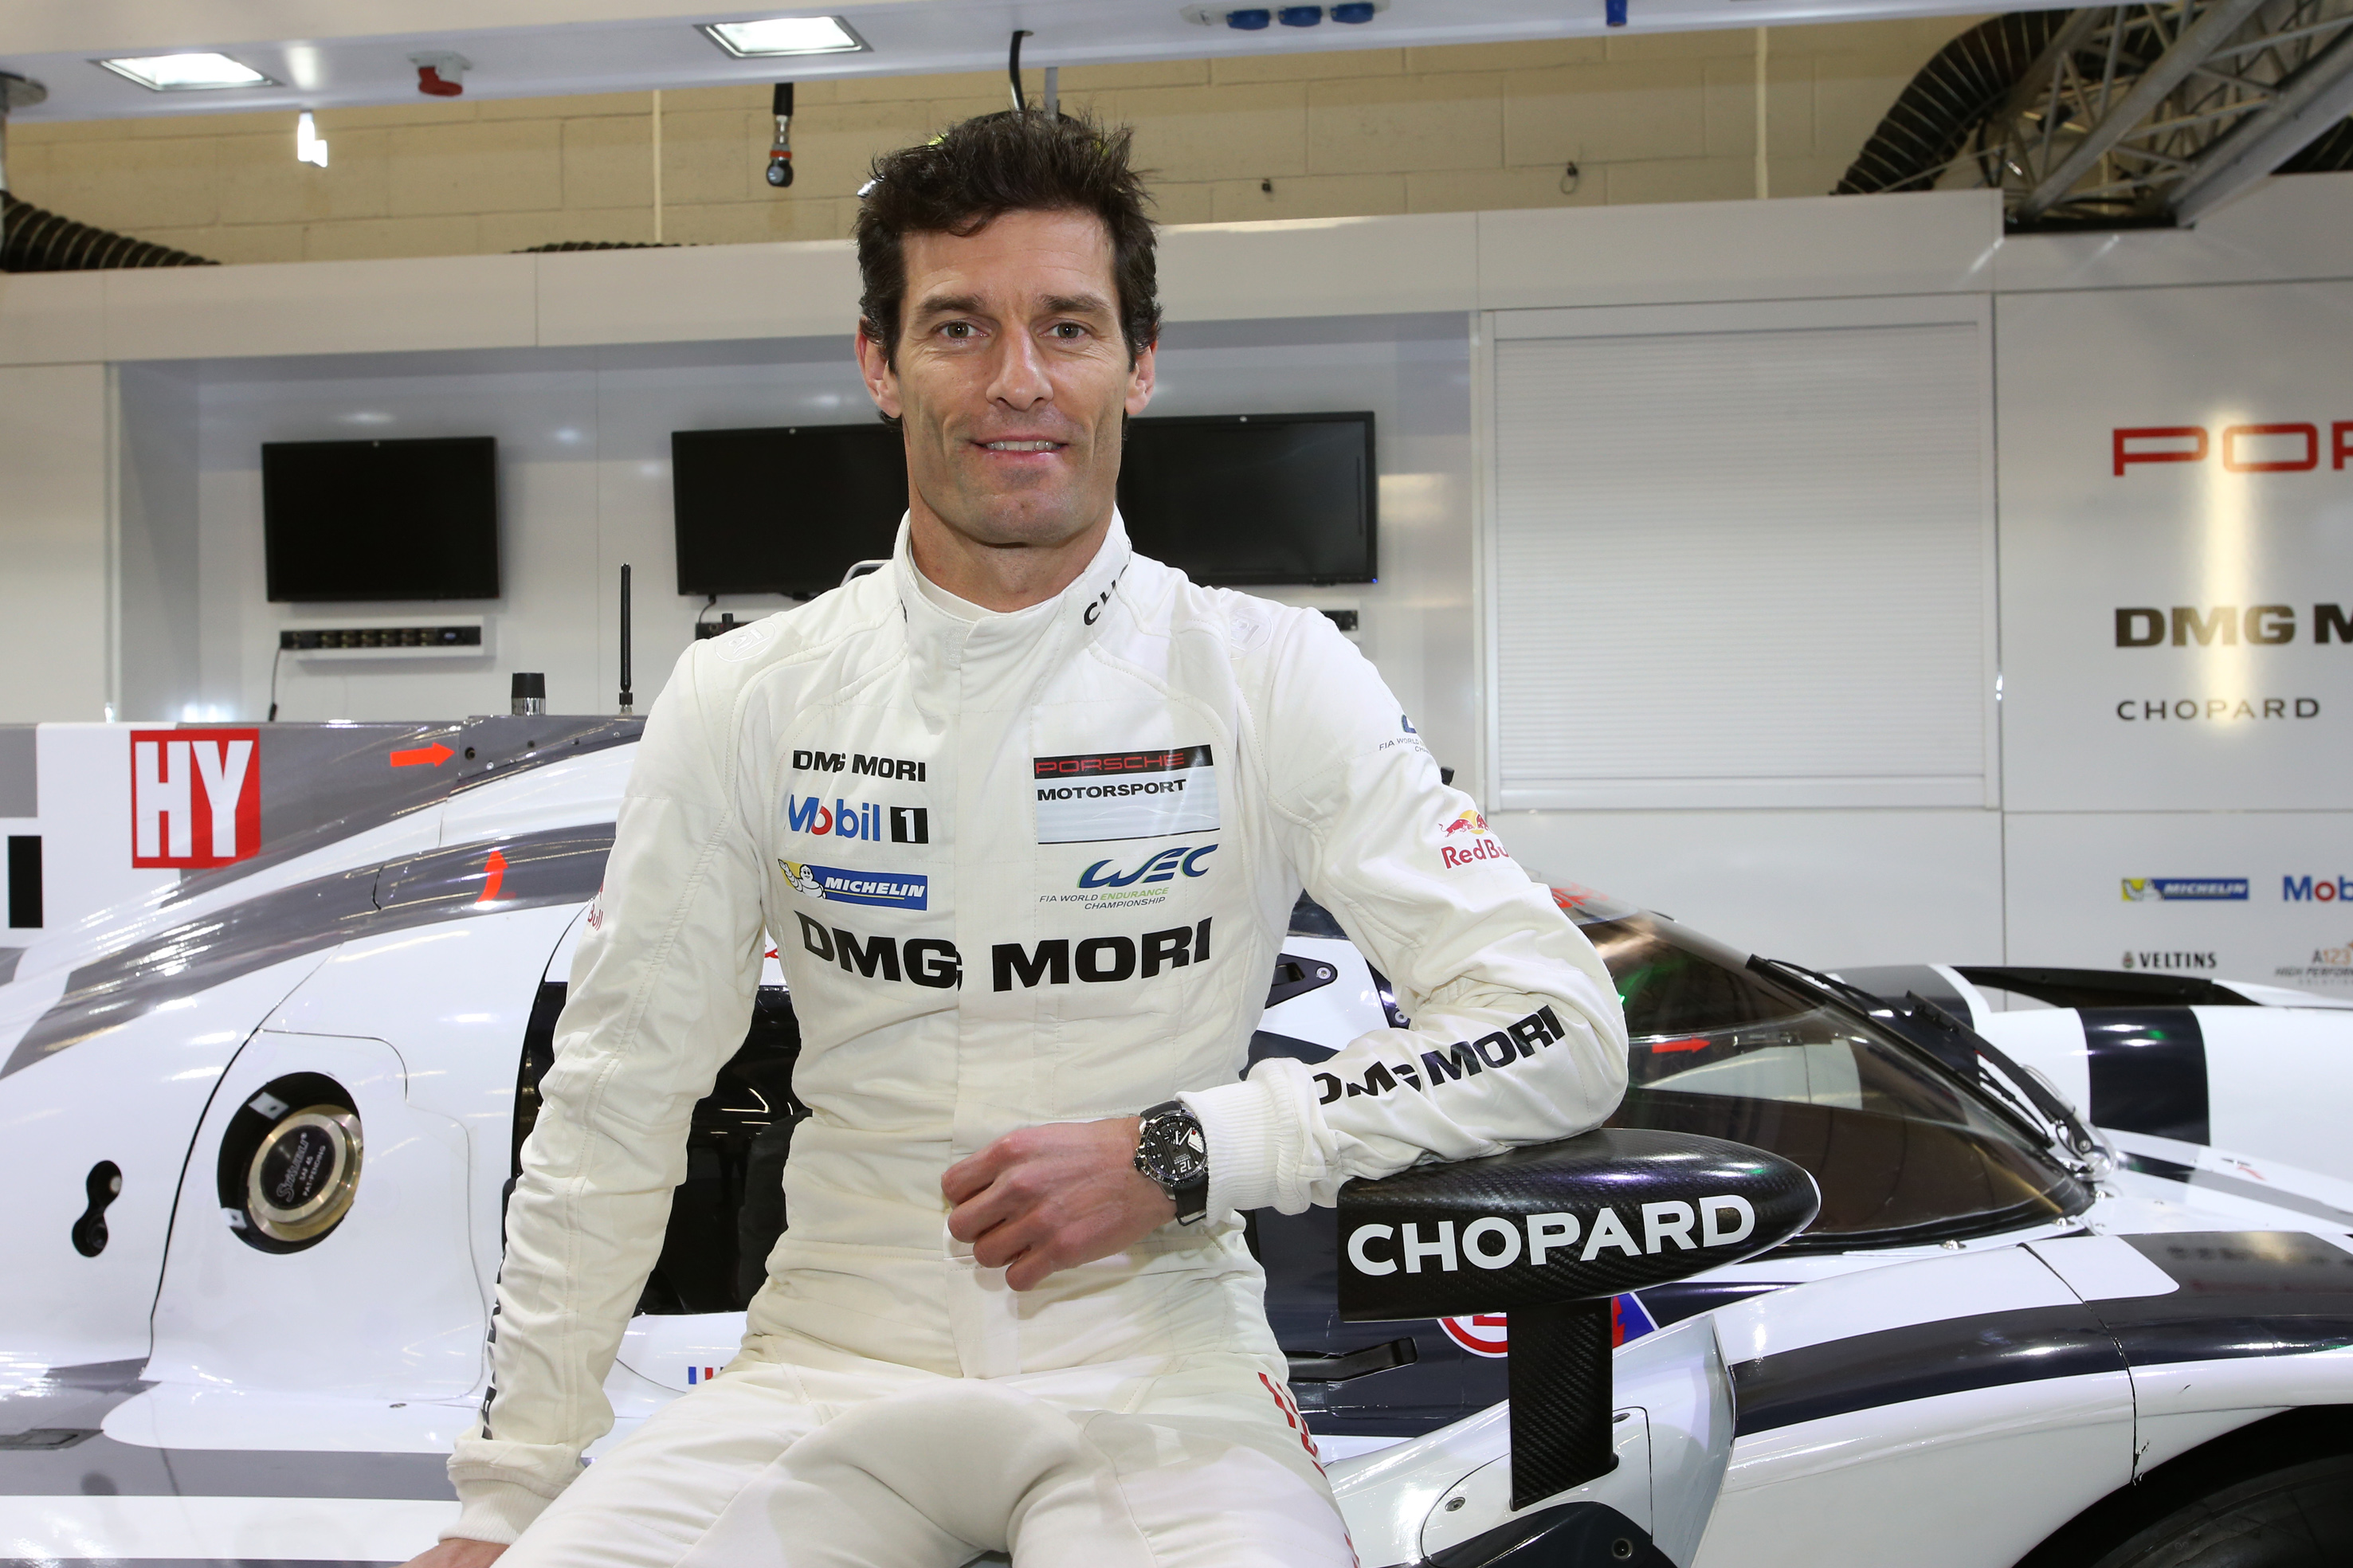 Mark Webber - Porsche Motorsport Driver and Chopard ambassador